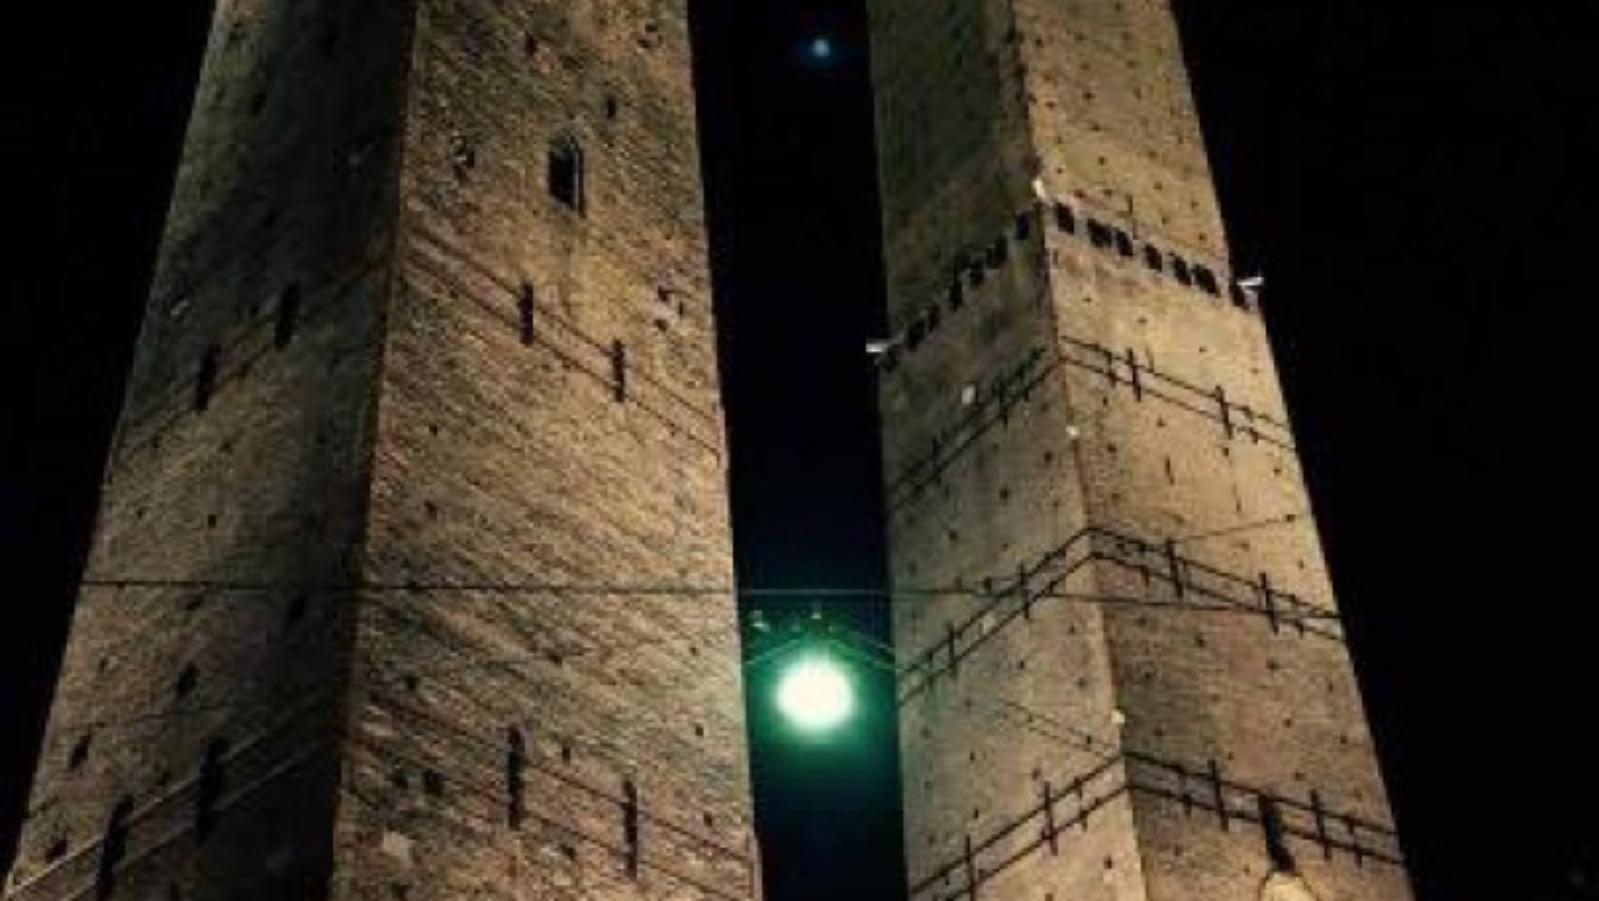 Le due torri di notte, Bologna